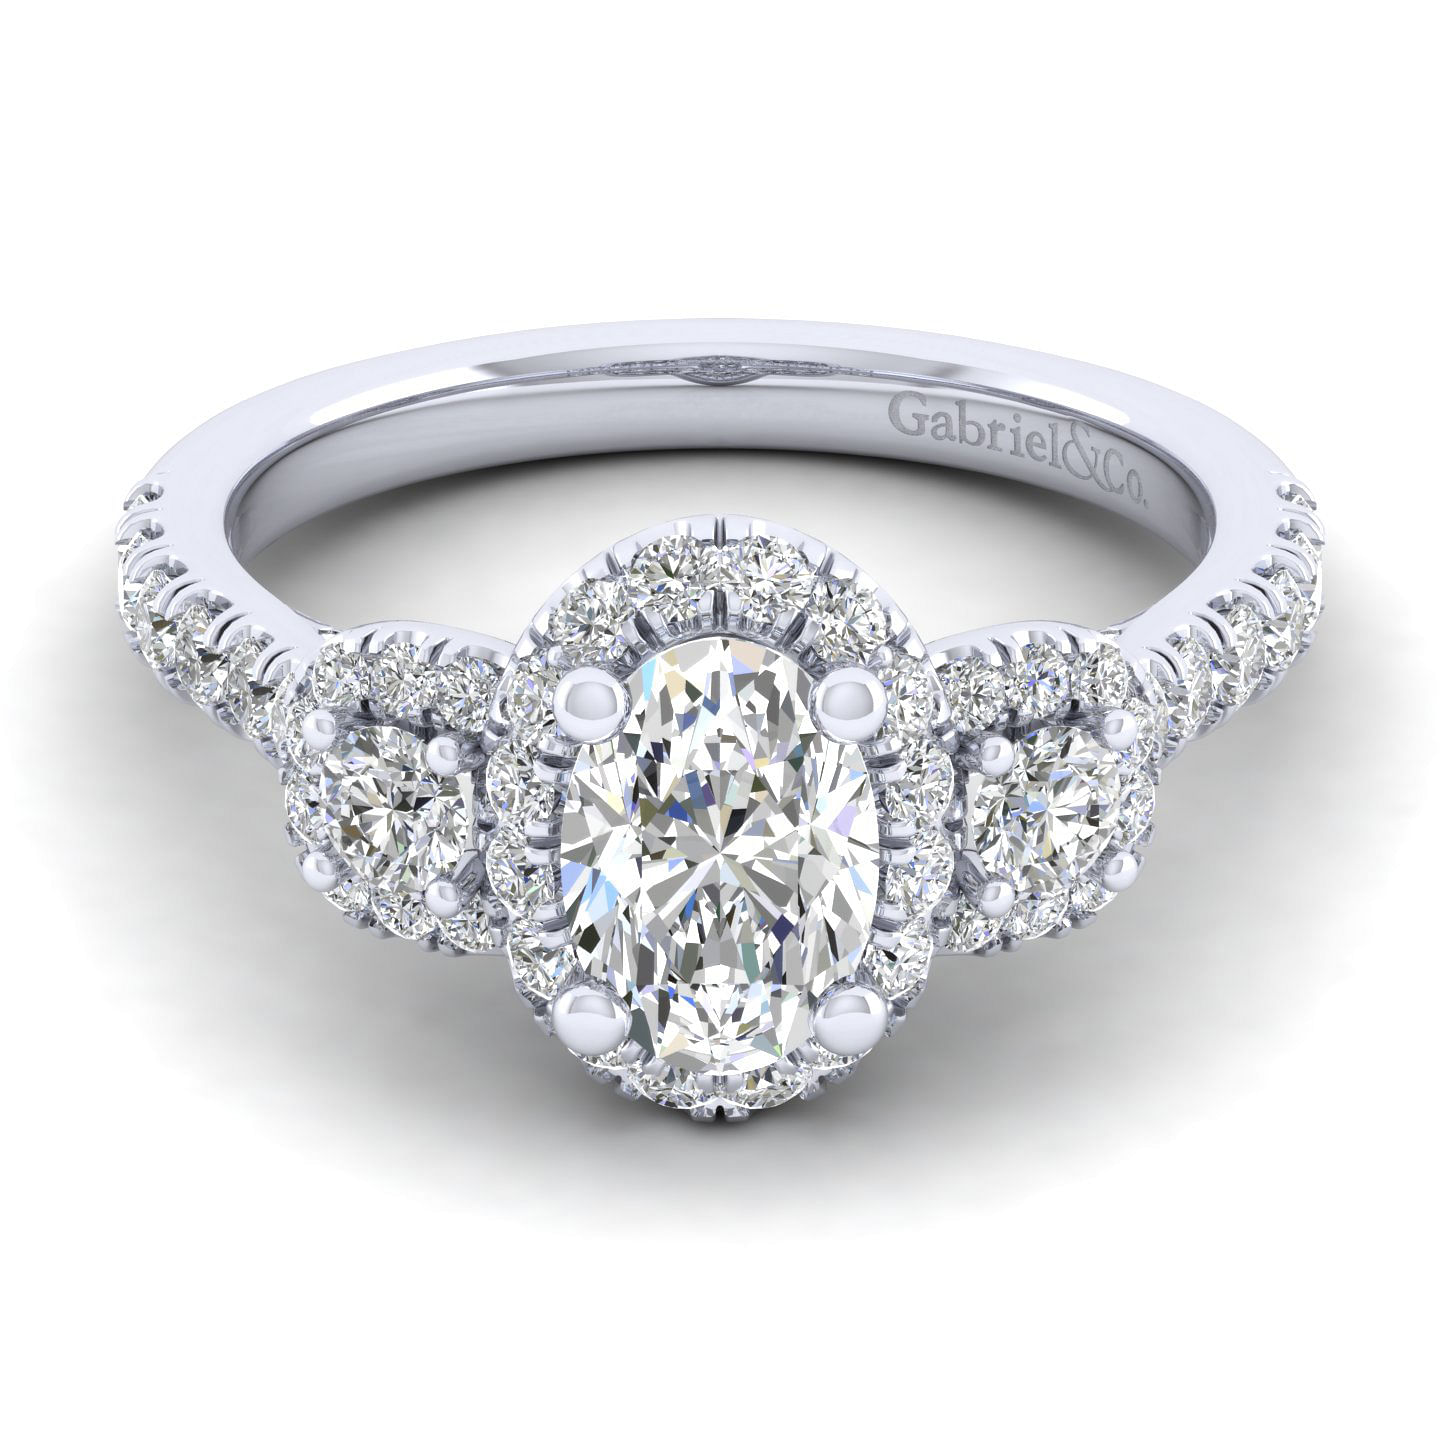 Lavender - 14K White Gold Oval Diamond Engagement Ring